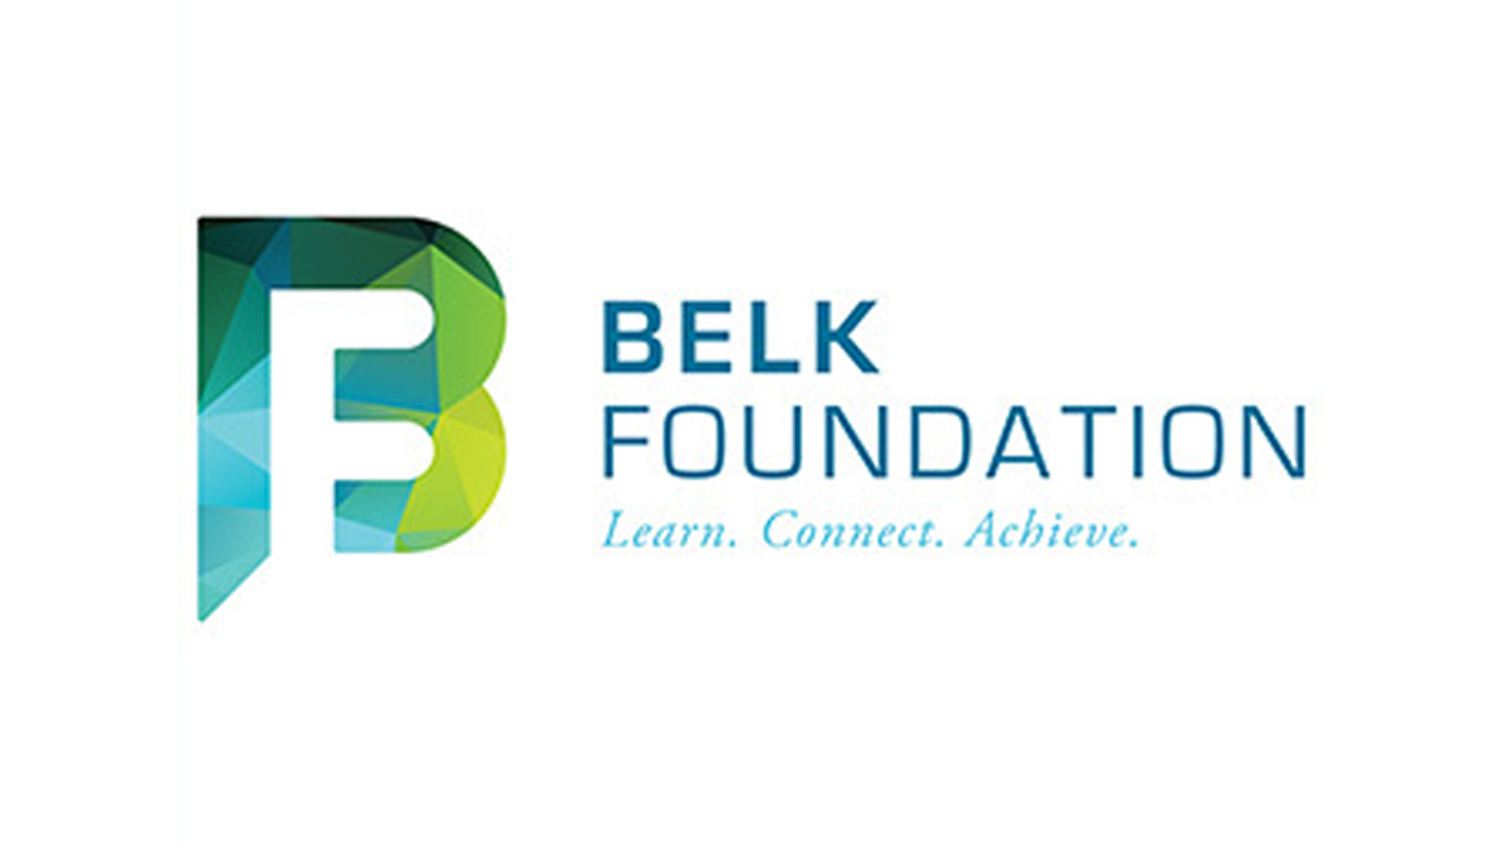 Belk Foundation